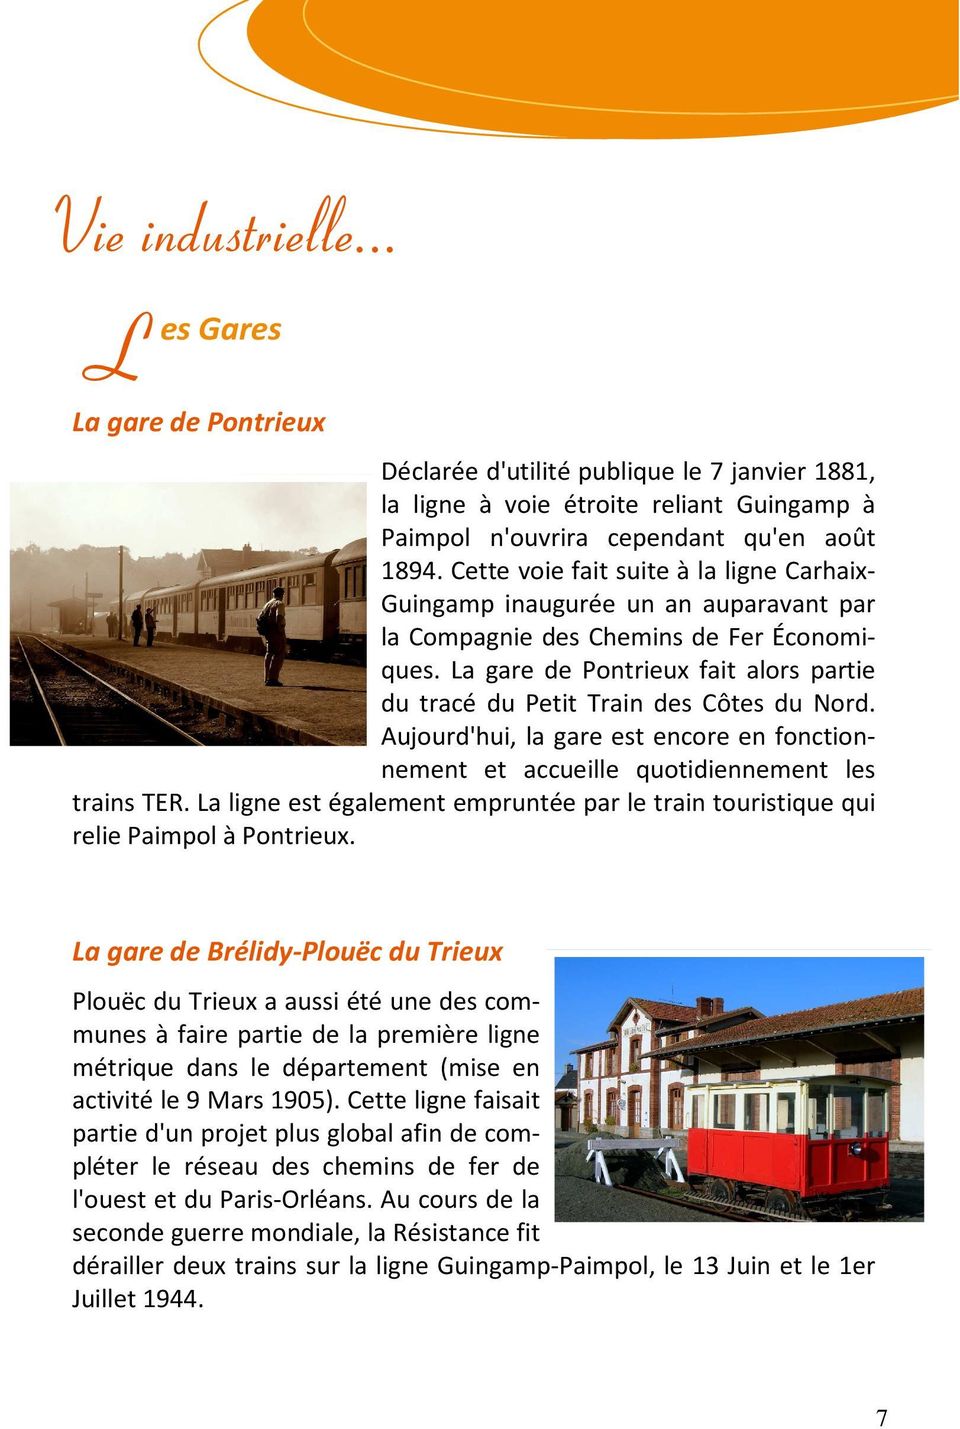 a gare de Pontrieux fait alors partie du tracé du Petit Train des Côtes du Nord. Aujourd'hui, la gare est encore en fonctionnement et accueille quotidiennement les trains TER.